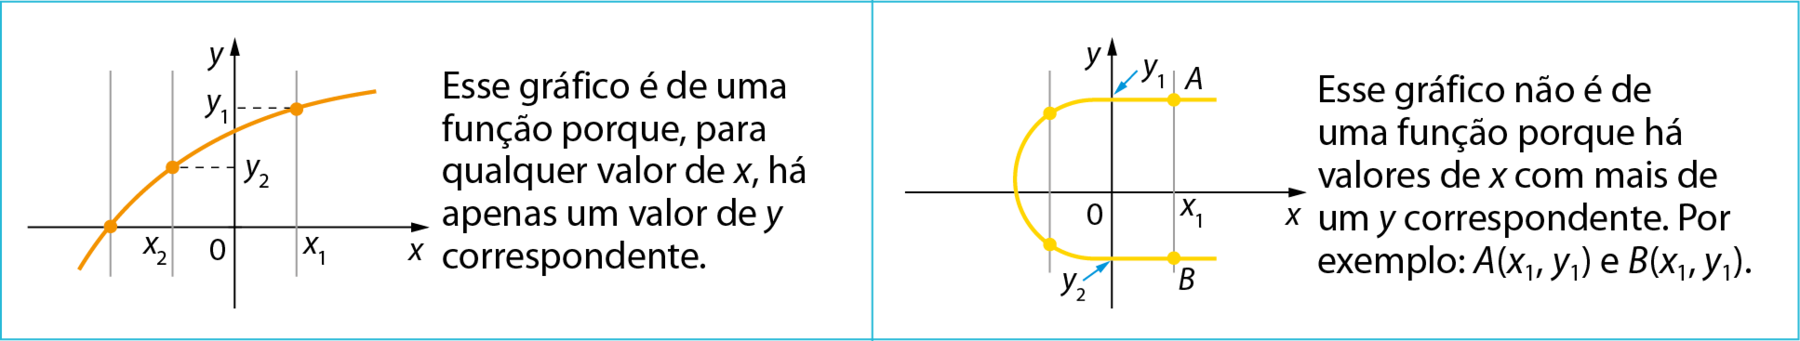 Gráficos. No primeiro, um eixo horizontal perpendicular a um eixo vertical. 
No eixo horizontal estão indicados: x subscrito 2, 0, x subscrito 1 e ele está rotulado como x.
No eixo vertical estão indicados: 0, y subscrito 2, y subscrito 1 e ele está rotulado como y.
3 linhas verticais interceptando o eixo x: uma à esquerda de x subscrito 2, uma passando por x subscrito 2 à esquerda do eixo y e outra à direita do eixo y, passando por x subscrito 1, igualmente espaçadas. 
3 pontos laranjas estão indicados no plano cartesiano. Um ponto está sobre o eixo x na intersecção da segunda linha vertical, à esquerda, do x subscrito 2. Outro ponto na linha vertical até x subscrito 2 no eixo x e linha tracejada na horizontal até y subscrito 2 no eixo y. Outro ponto na linha vertical até x subscrito 1 no eixo x e linha tracejada na horizontal até y subscrito 1 no eixo y.
Linha laranja contínua passando pelos 3 pontos.
Legenda à direita: esse gráfico é de uma função porque, vírgula para qualquer valor de x, há apenas um valor de y correspondente. No segundo gráfico, um eixo horizontal perpendicular a um eixo vertical. 
No eixo horizontal estão indicados: 0, x subscrito 1 e ele está rotulado como x.
No eixo vertical estão indicados: y subscrito 2, 0, y subscrito 1 e ele está rotulado como y.
2 linhas verticais interceptando o eixo x: uma à esquerda do eixo y e outra à direita do eixo y passando por x subscrito 1, igualmente espaçadas. 
4 pontos amarelos estão indicados no plano cartesiano. Dois pontos estão sobre a linha vertical à esquerda do eixo y e os outros dois pontos estão na linha vertical à direita do eixo y, com indicação de A e B.
Linha amarela contínua passando pelos 4 pontos, no formato que lembra letra c.
Legenda à direita: esse gráfico não é de uma função porque há valores de x com mais de um y correspondente. Por exemplo: A(x subscrito 1, y subscrito 1) e B(x subscrito 1, y subscrito 1).